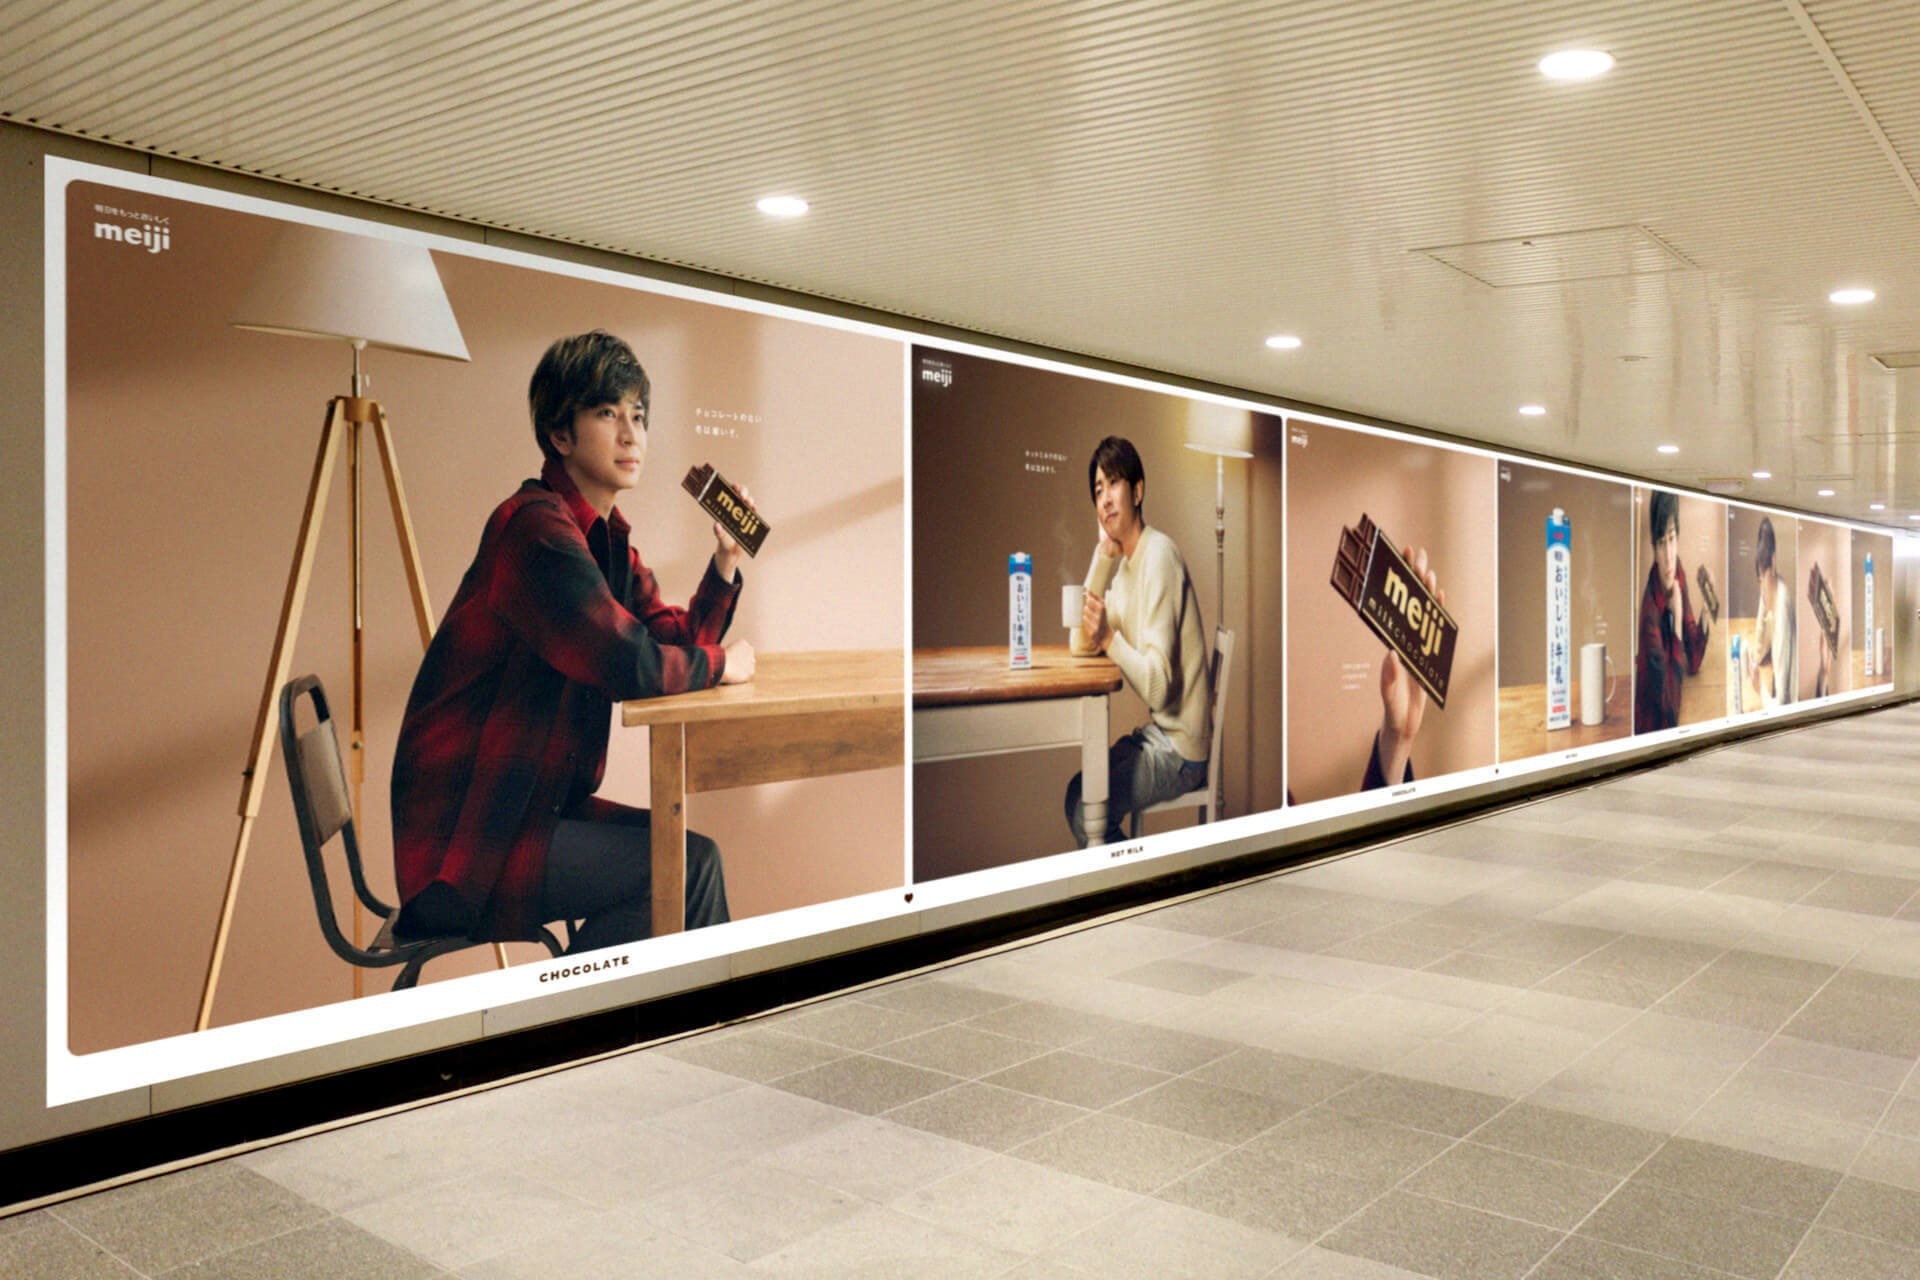 嵐arashi 相葉雅紀 松本潤暖入心廣告造型桌布限時免費下載 香港01 數碼生活